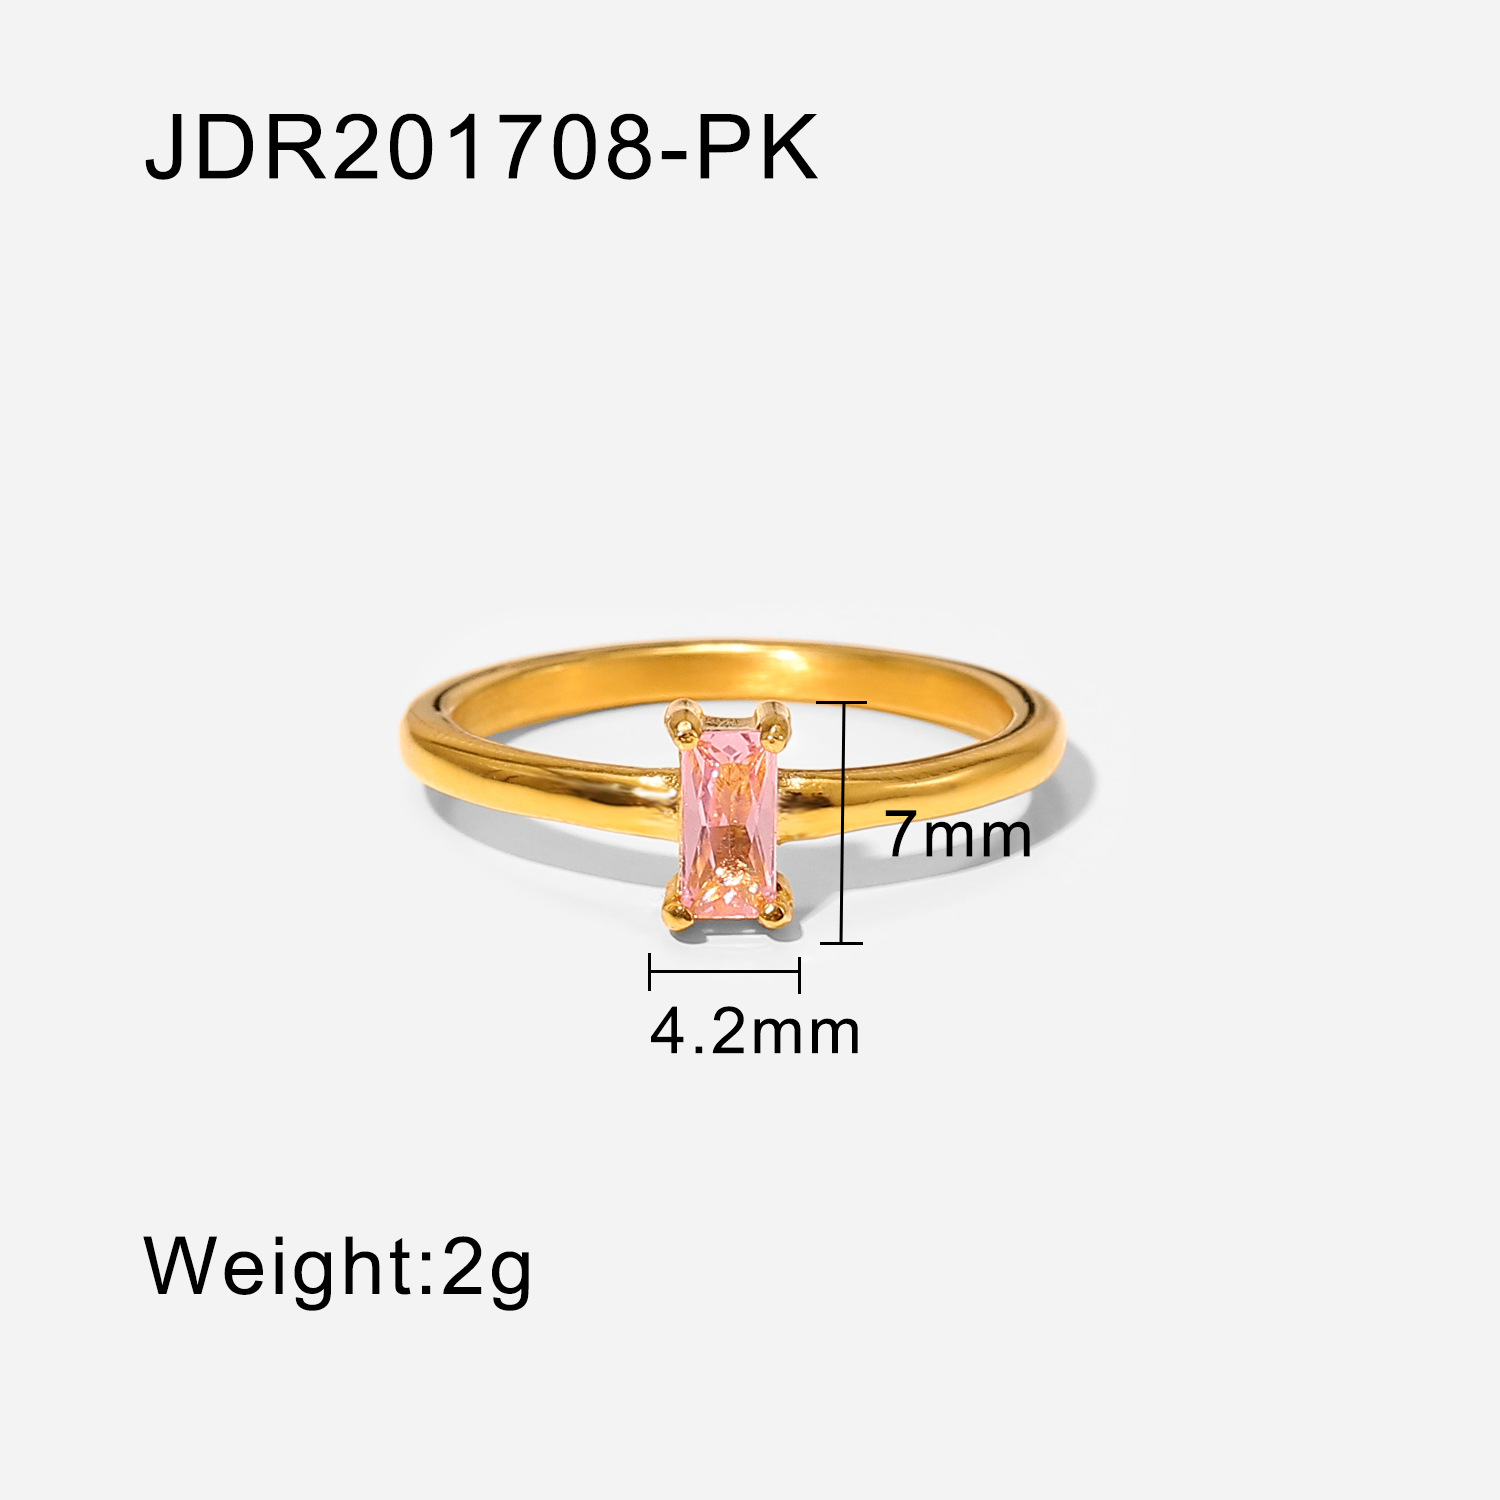 JDR201708-PK